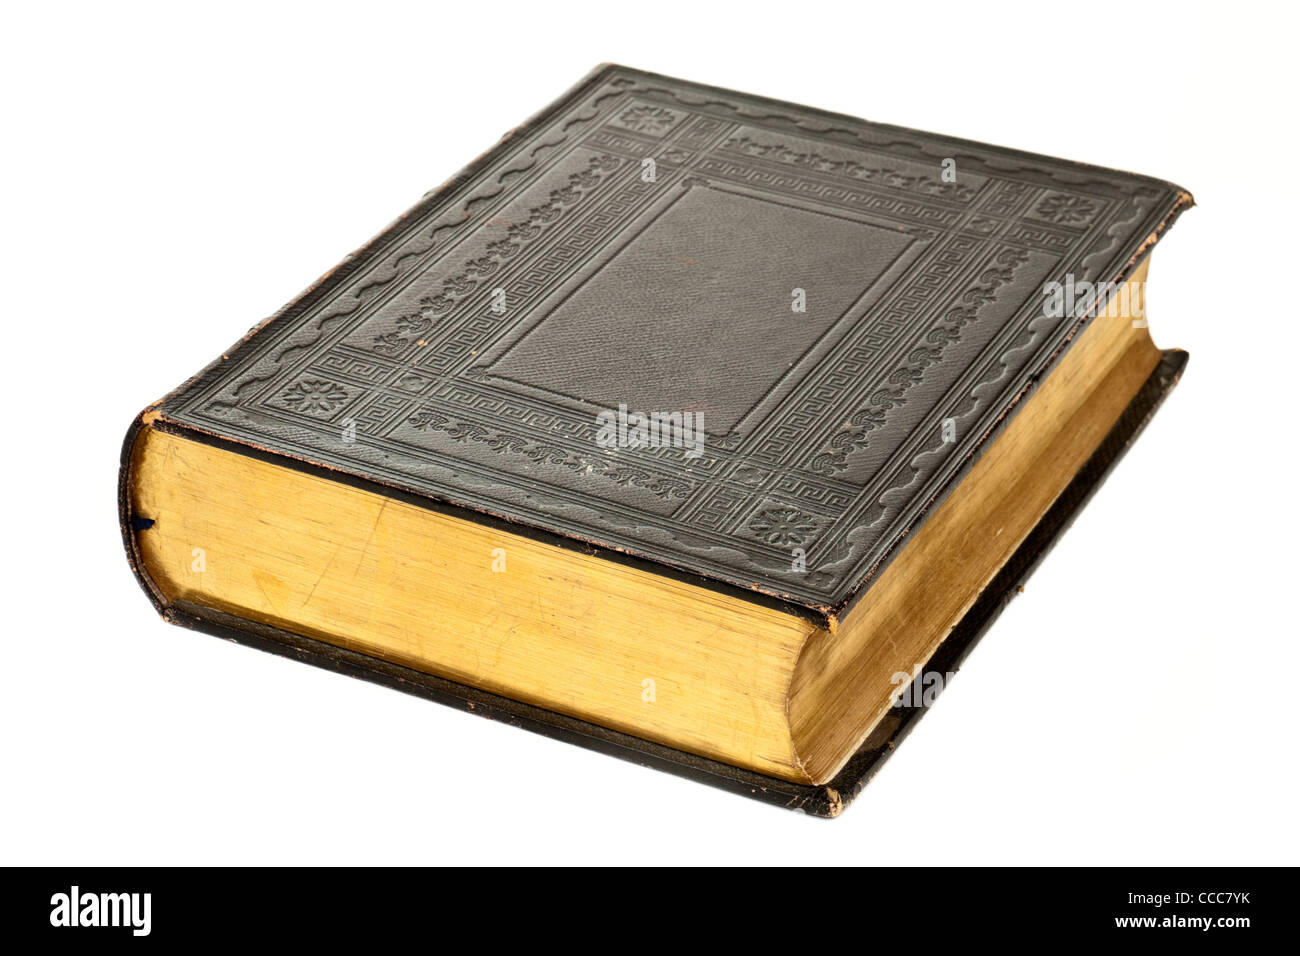 1865 Anglais leatherbound Antique church bible avec bords dorés, contenant la page de l'Ancien et du Nouveau Testament chrétien Banque D'Images